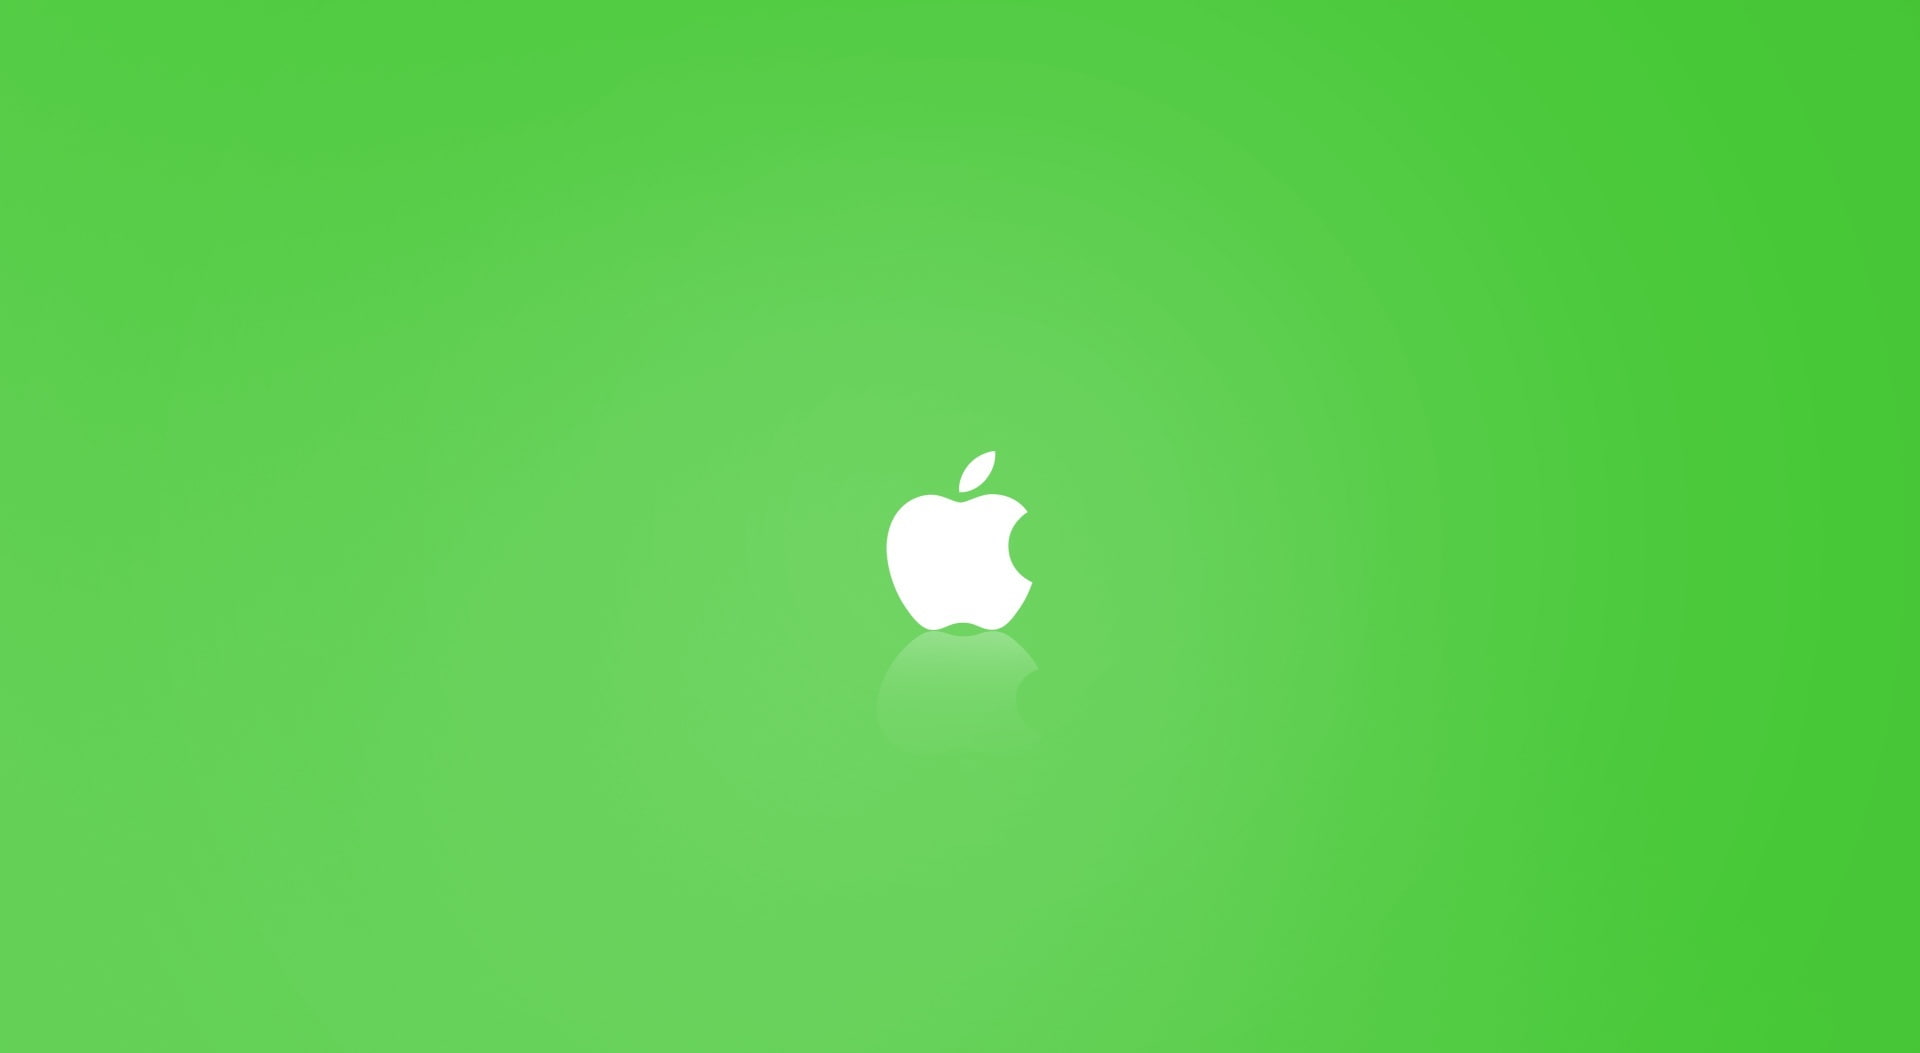 Apple MAC OS X Green, green Apple Mac wallpaper, Computers, green color